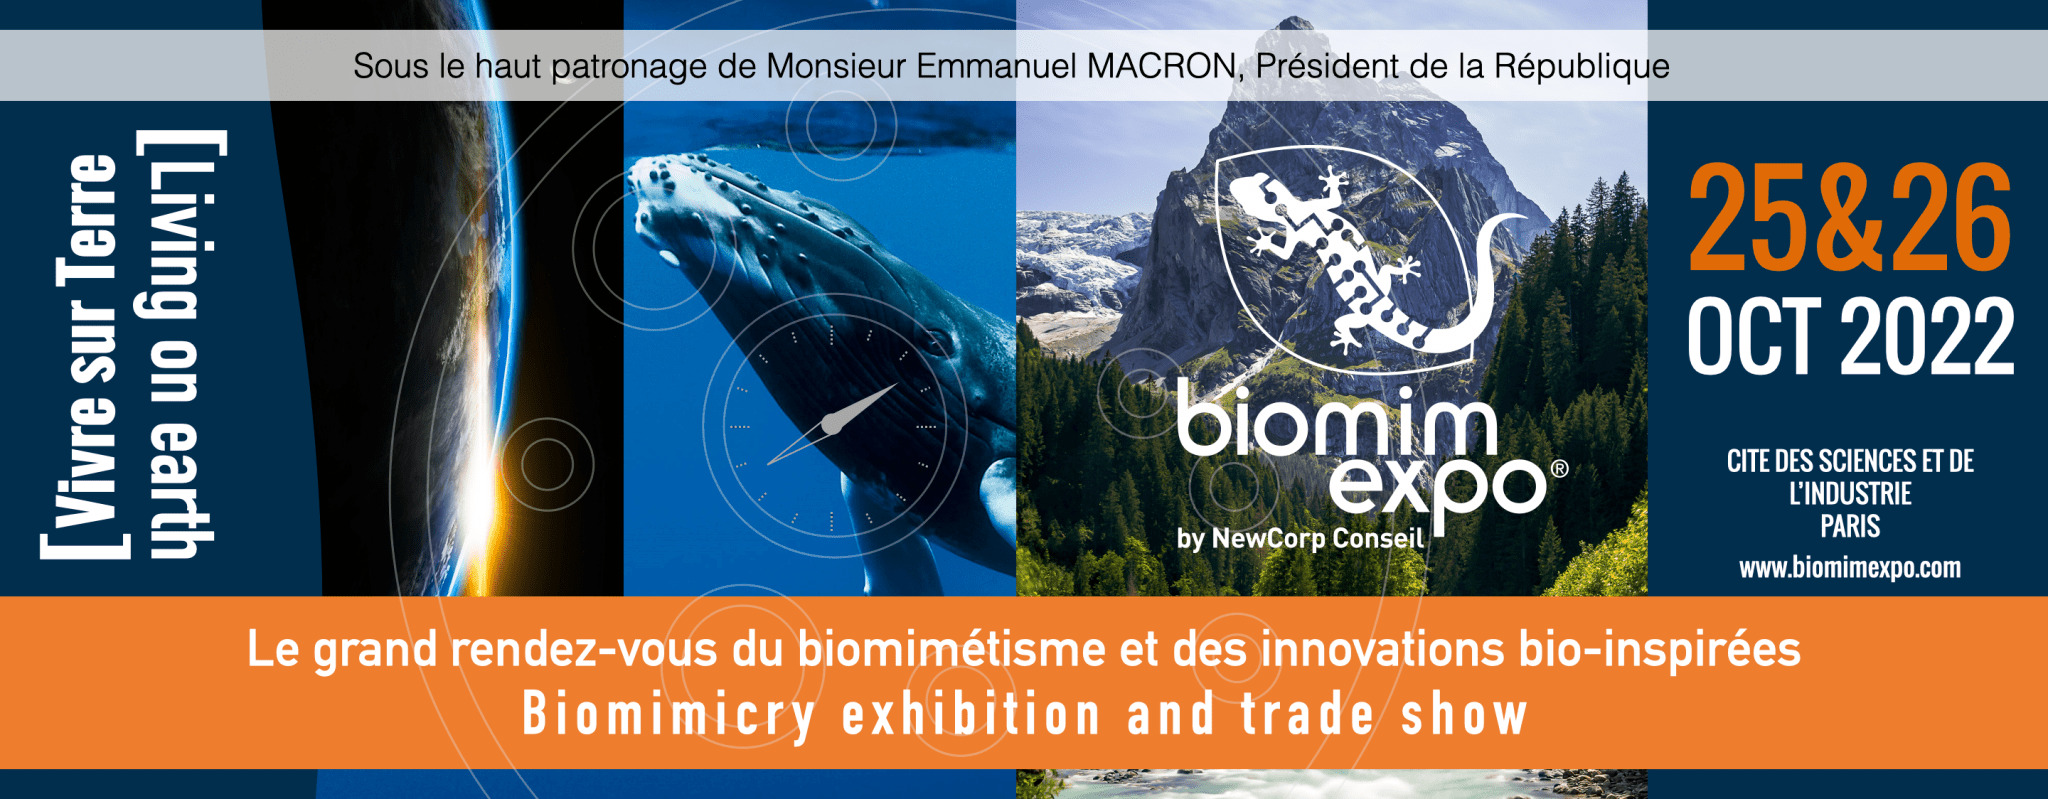 Biomim'expo 2022 - Saison 7 - VIVRE SUR TERRE